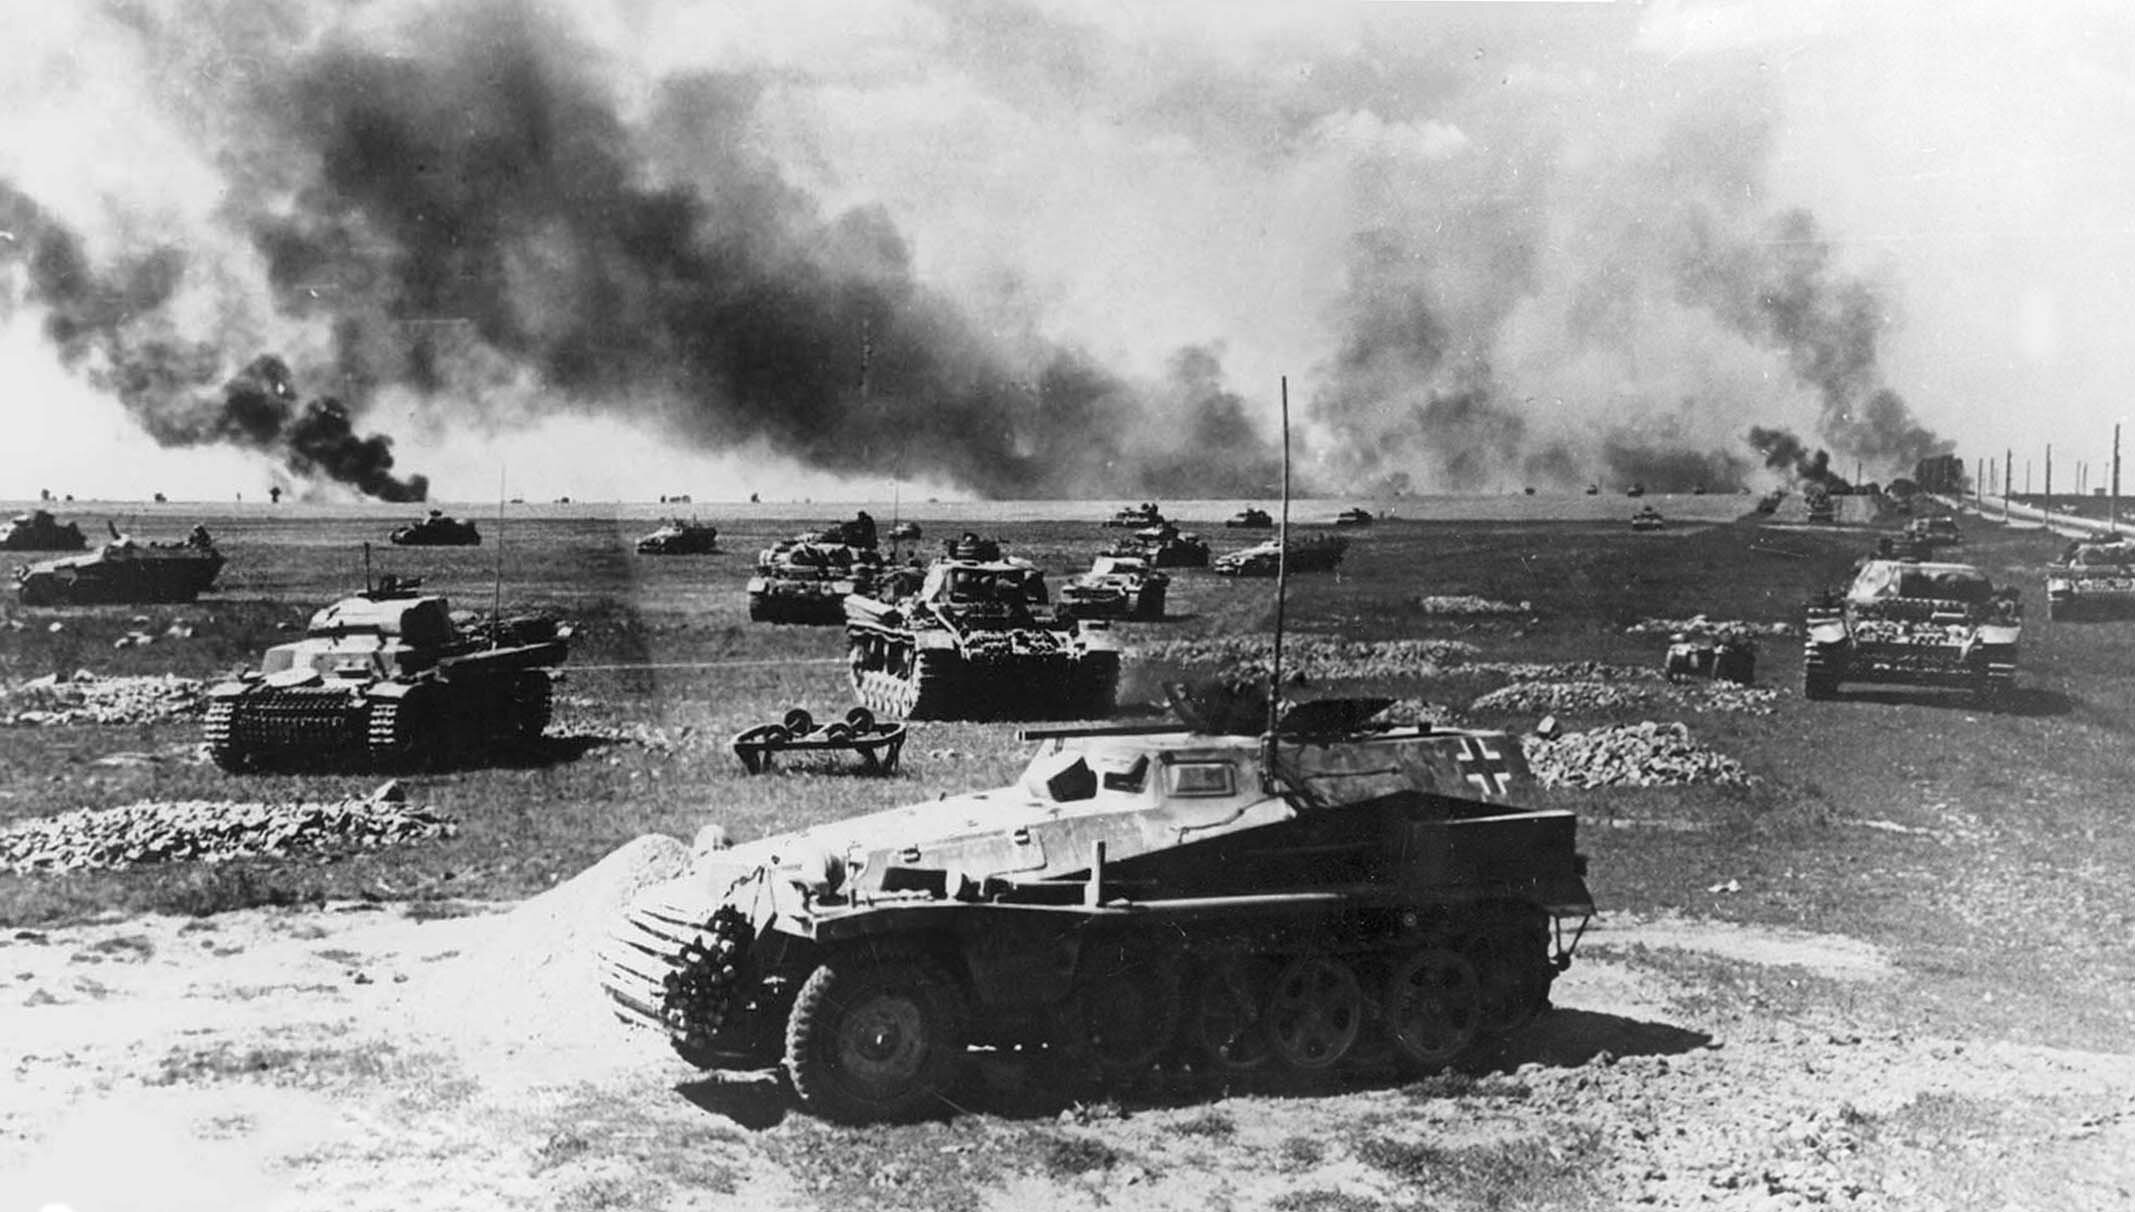 Нападение на советский союз 1941. Танковое сражение под Прохоровкой 12 июля 1943 г.. Смоленская битва 1941. Битва под Смоленском 1941. Operation Barbarossa 1941.